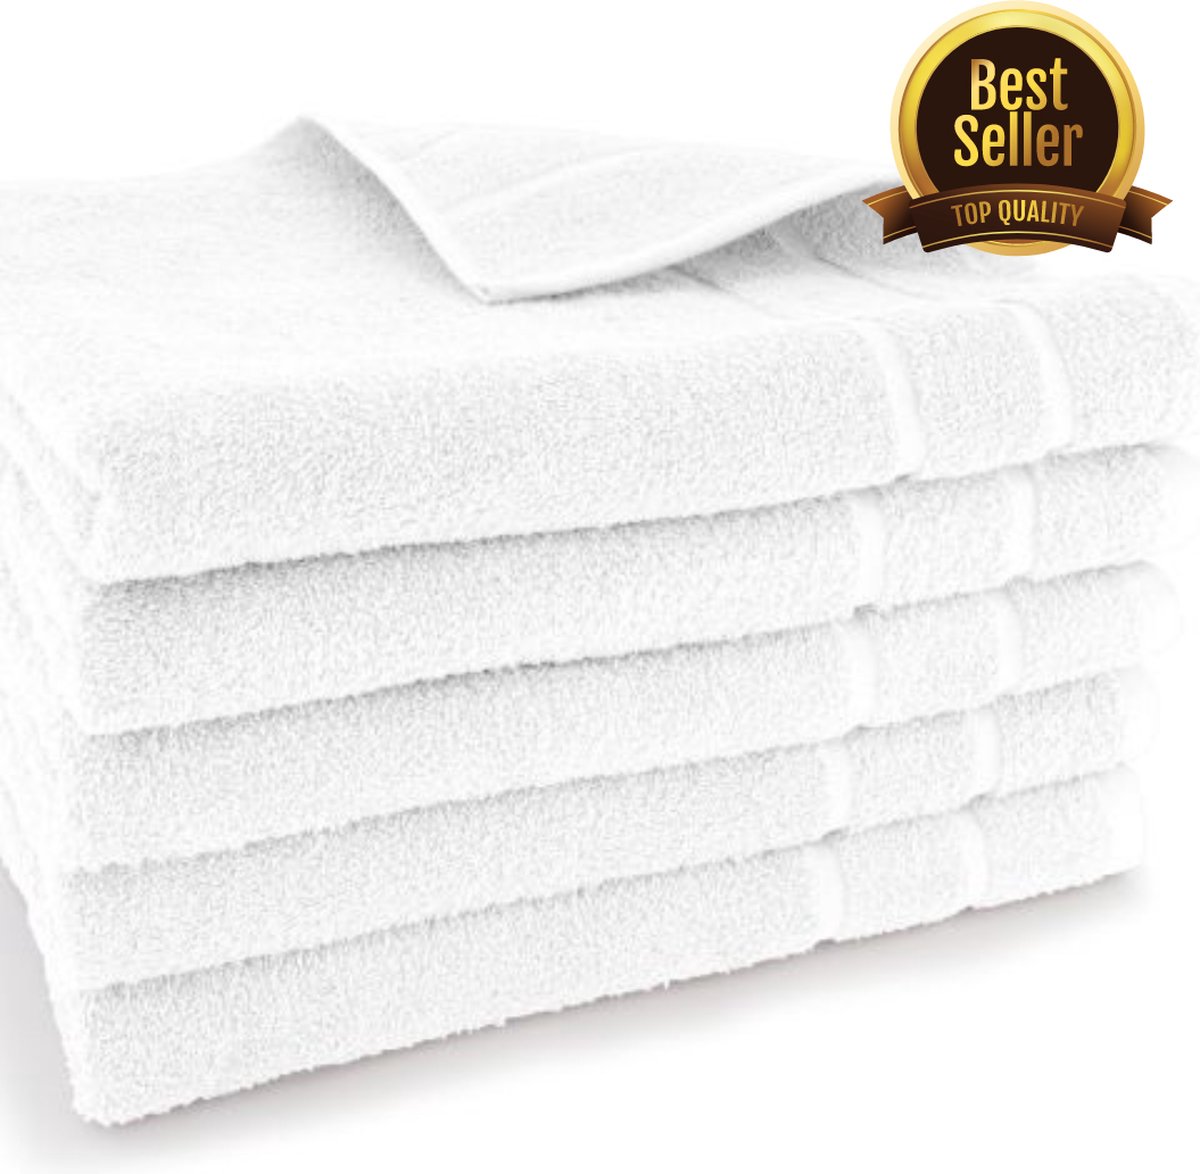 Exclusieve Handdoeken - Hotelkwaliteit - Wit - 70x140cm - Set van 5 stuks!